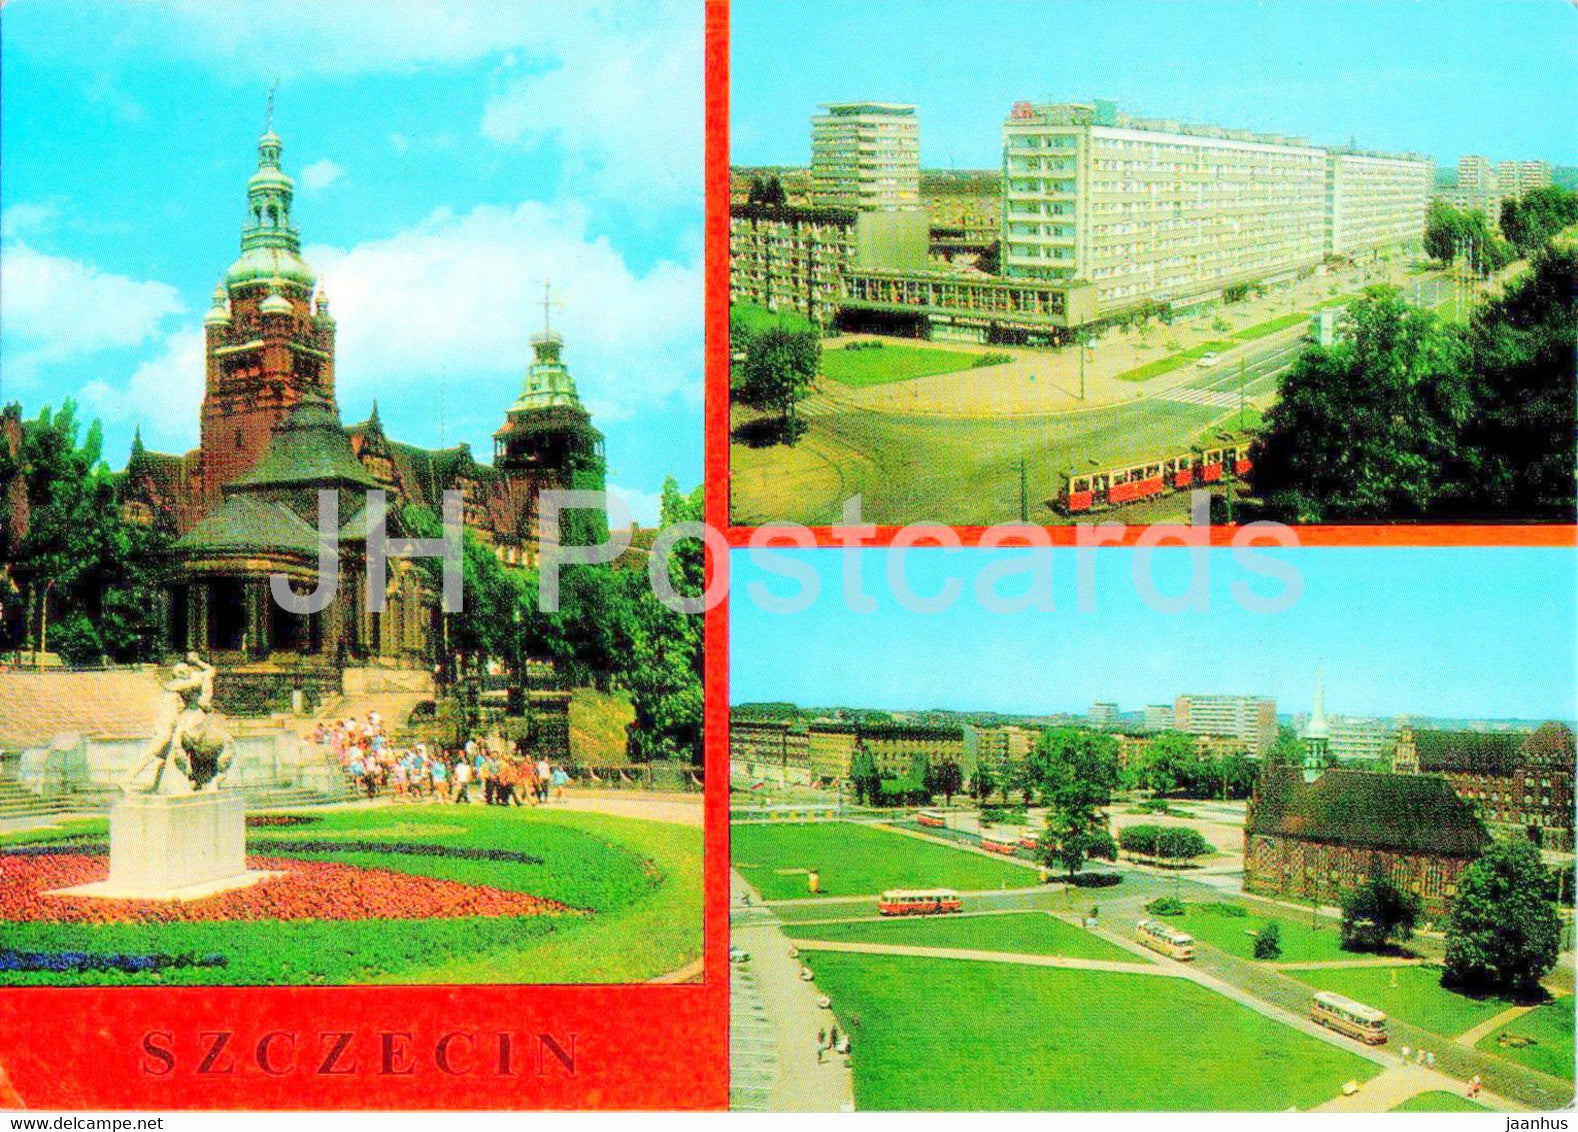 Szczecin - Waly Chrobrego - Aleja Wyzwolenia - tram - multiview - Poland - unused - JH Postcards